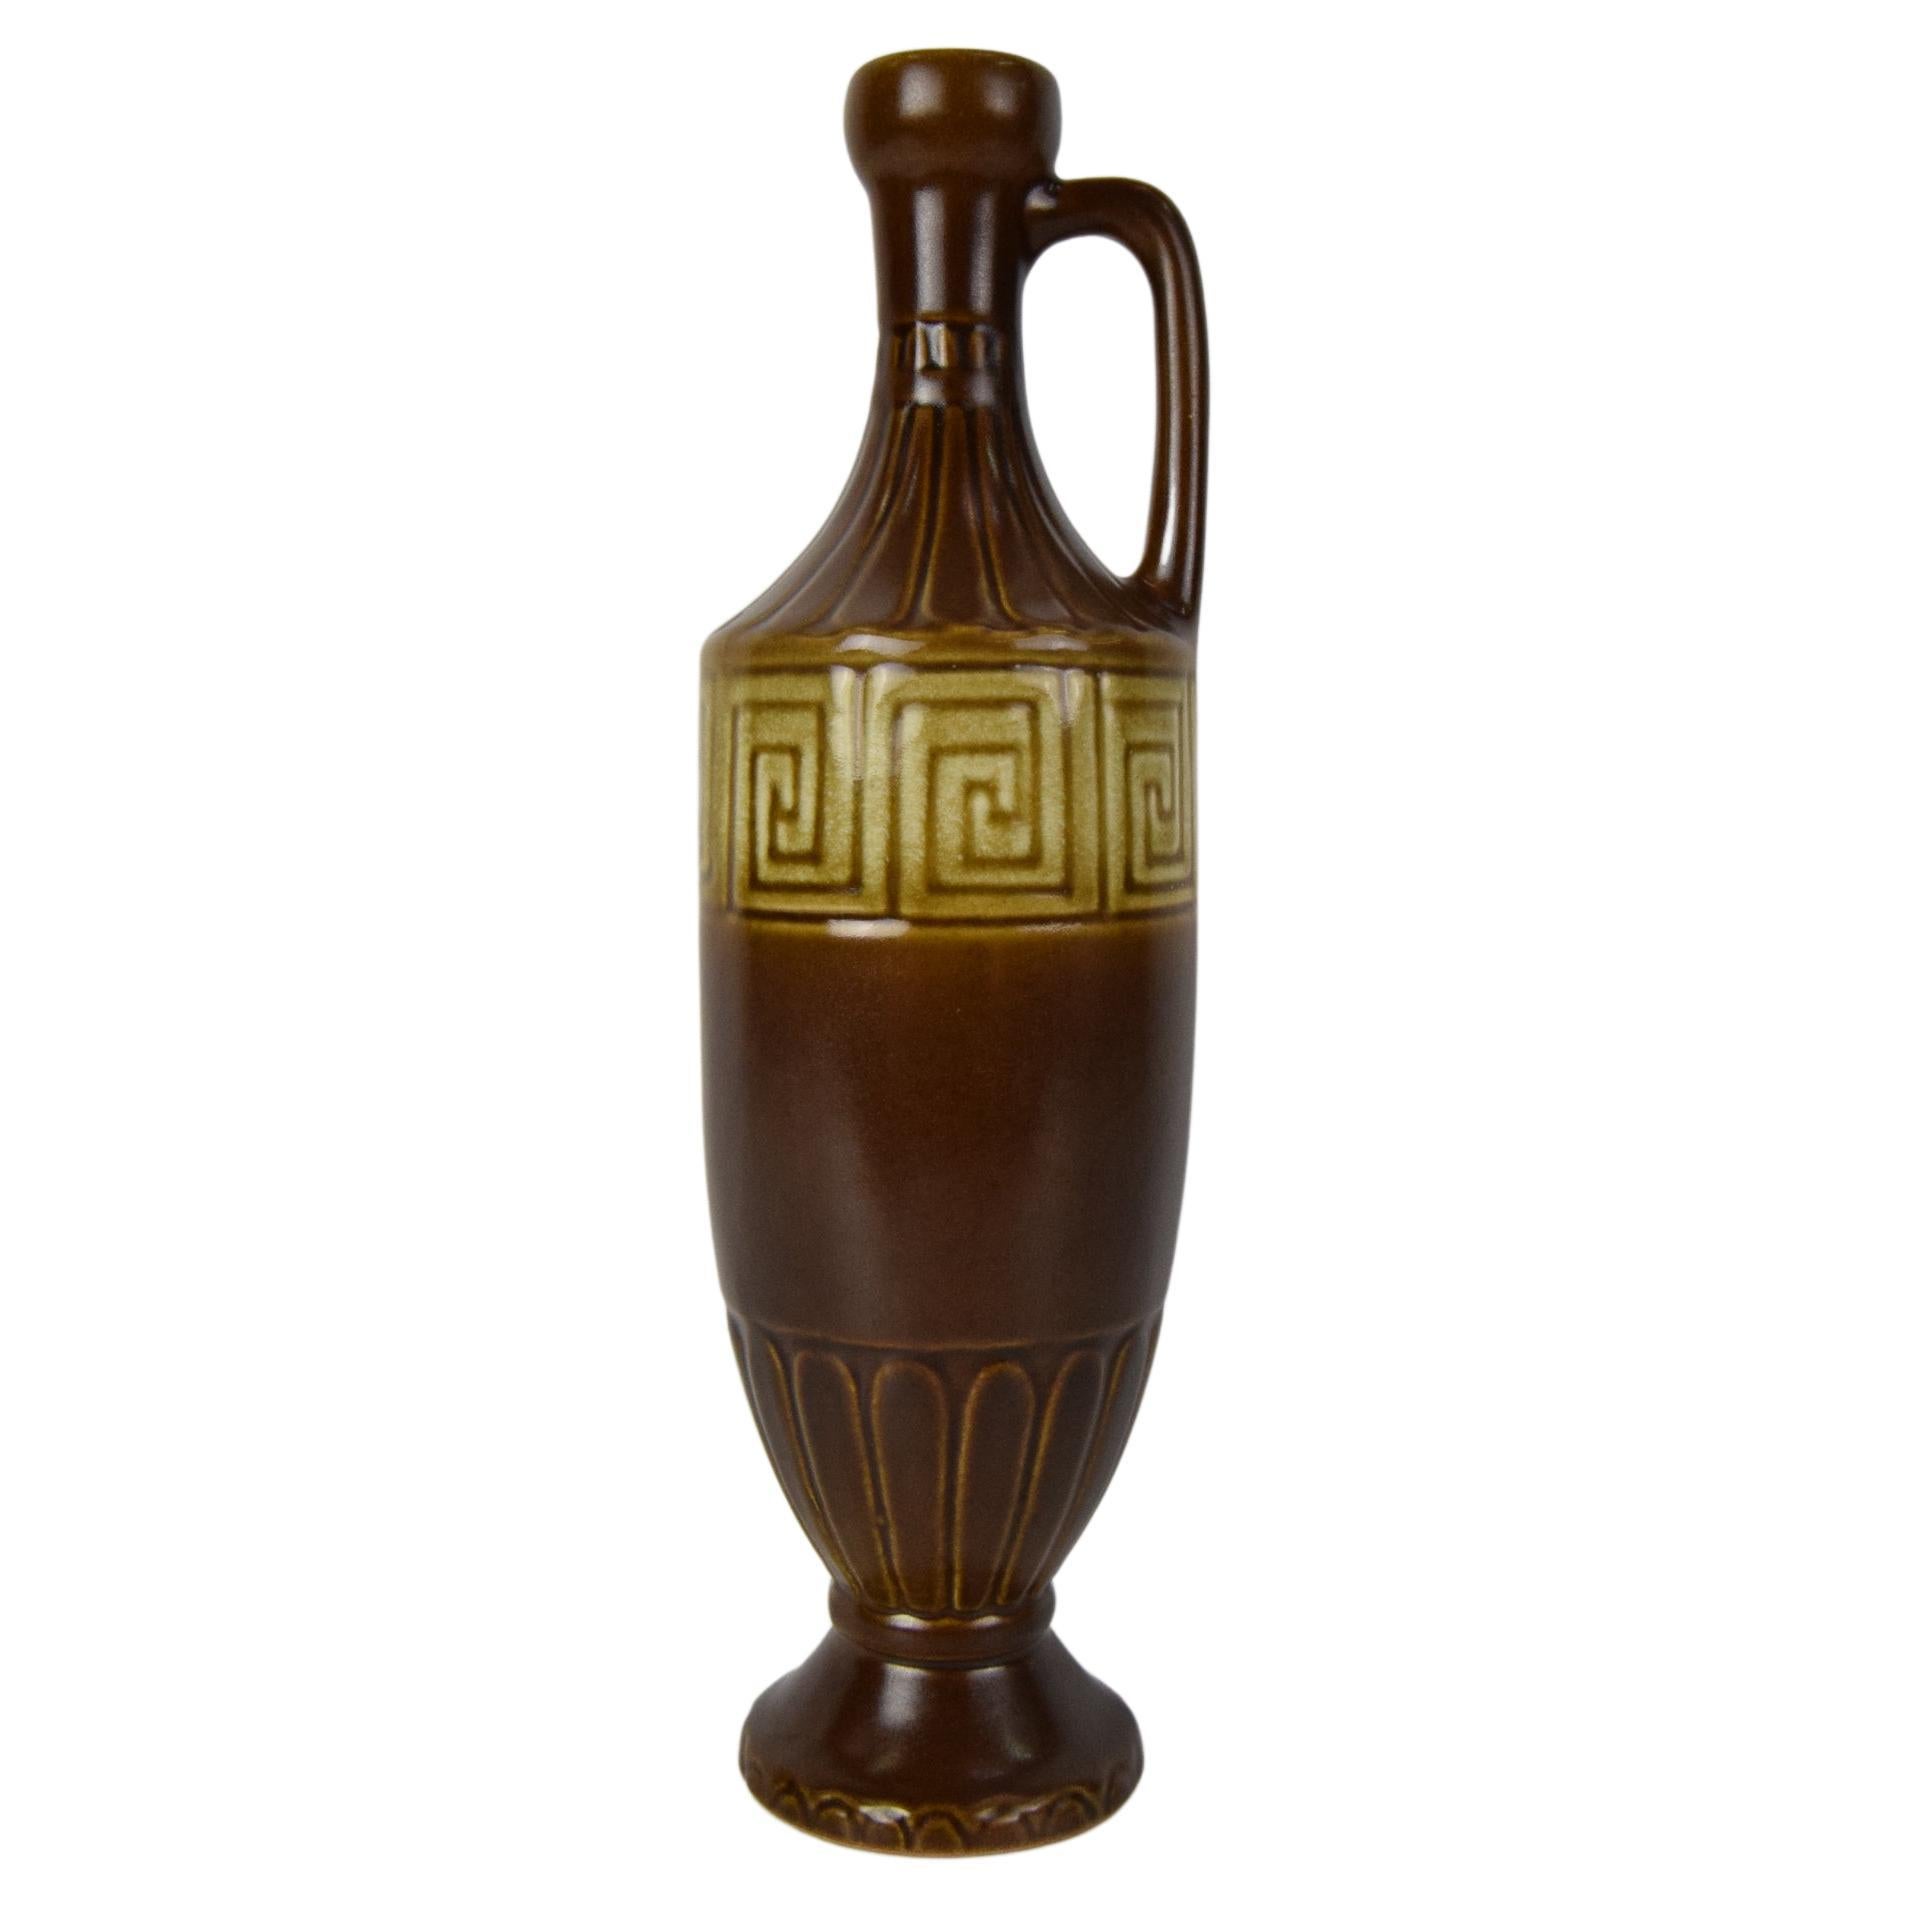 Ceramic Vase by Kravsko Keramik/Type 6272, 1960's. 